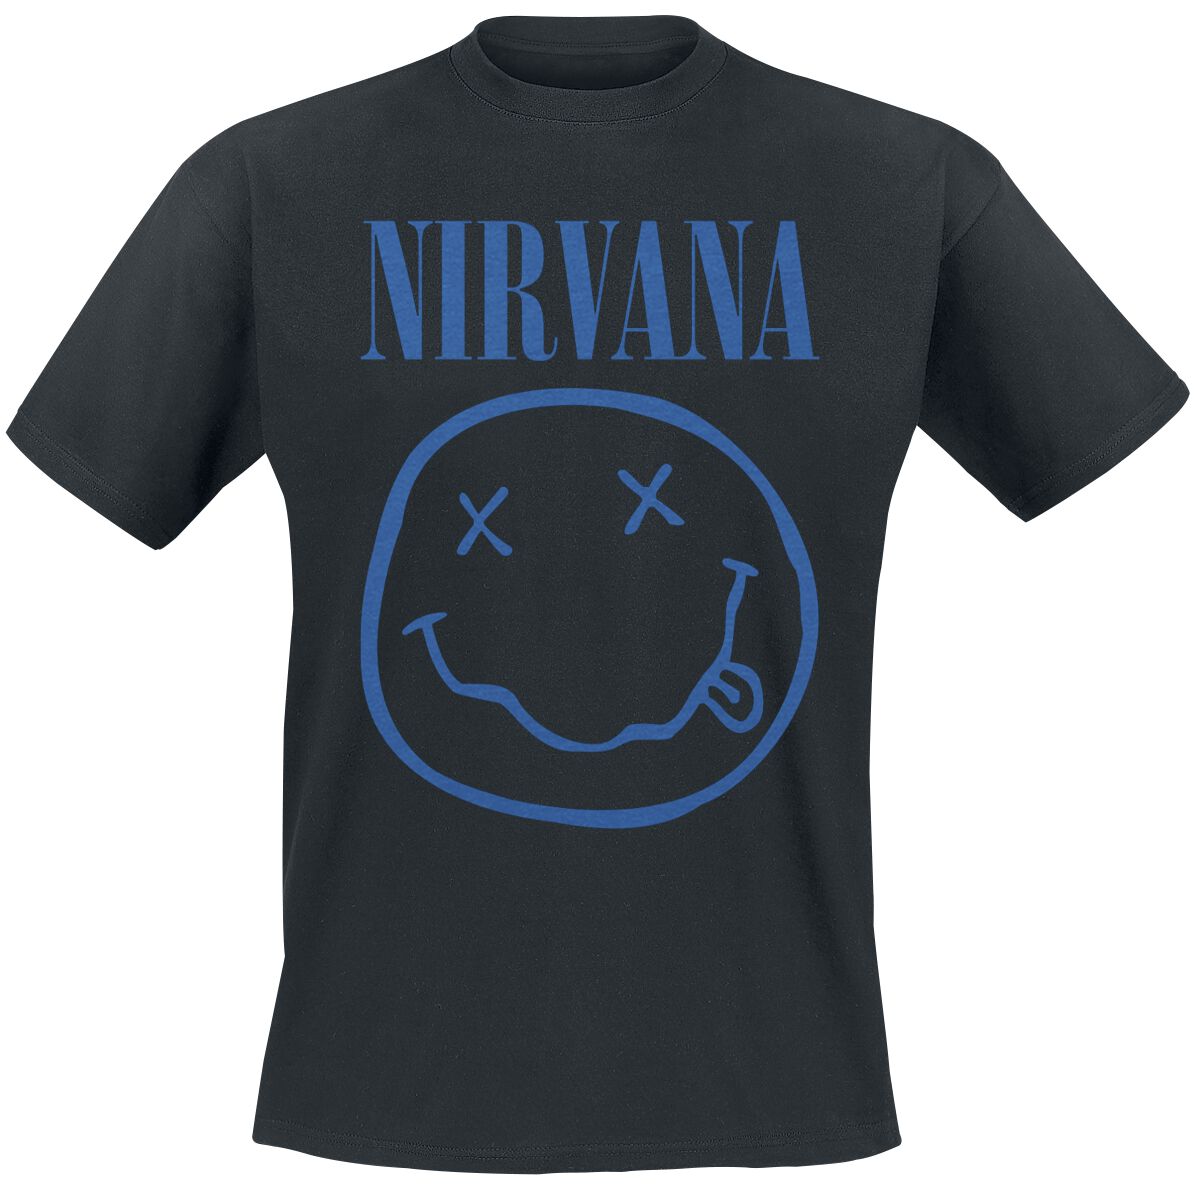 Nirvana T-Shirt - Blue Smiley - S bis XXL - für Männer - Größe XXL - schwarz  - Lizenziertes Merchandise!